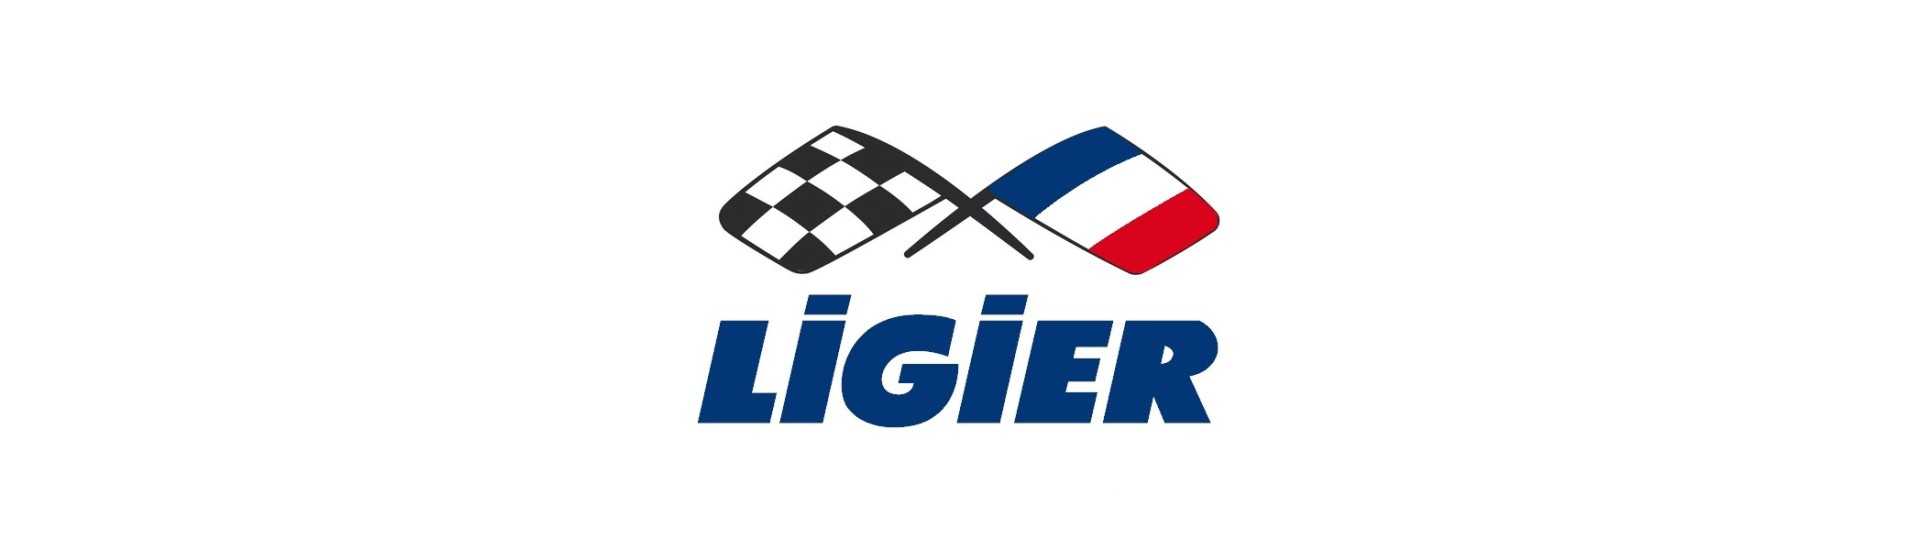 Carnet de intretinere la cel mai bun pret pentru o masina fara permis Ligier